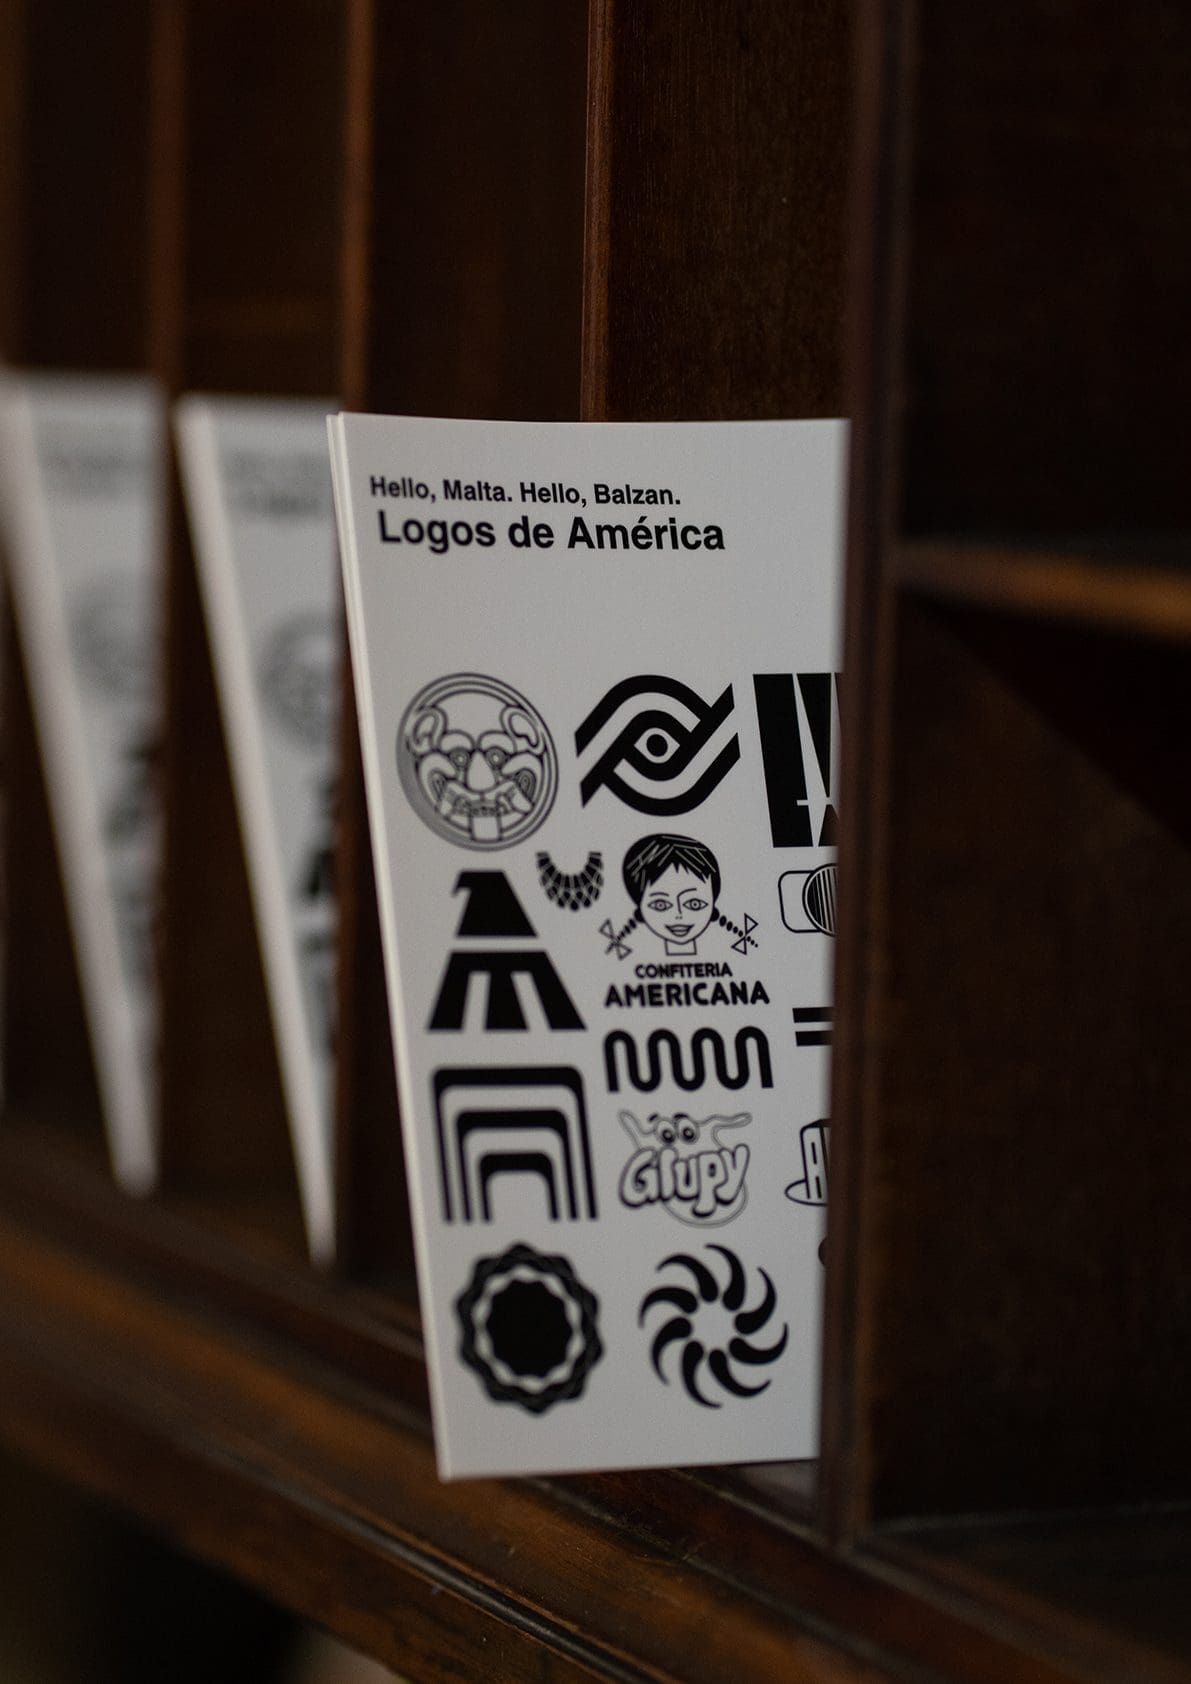 Logos de América Exhibition 2023 - Malta